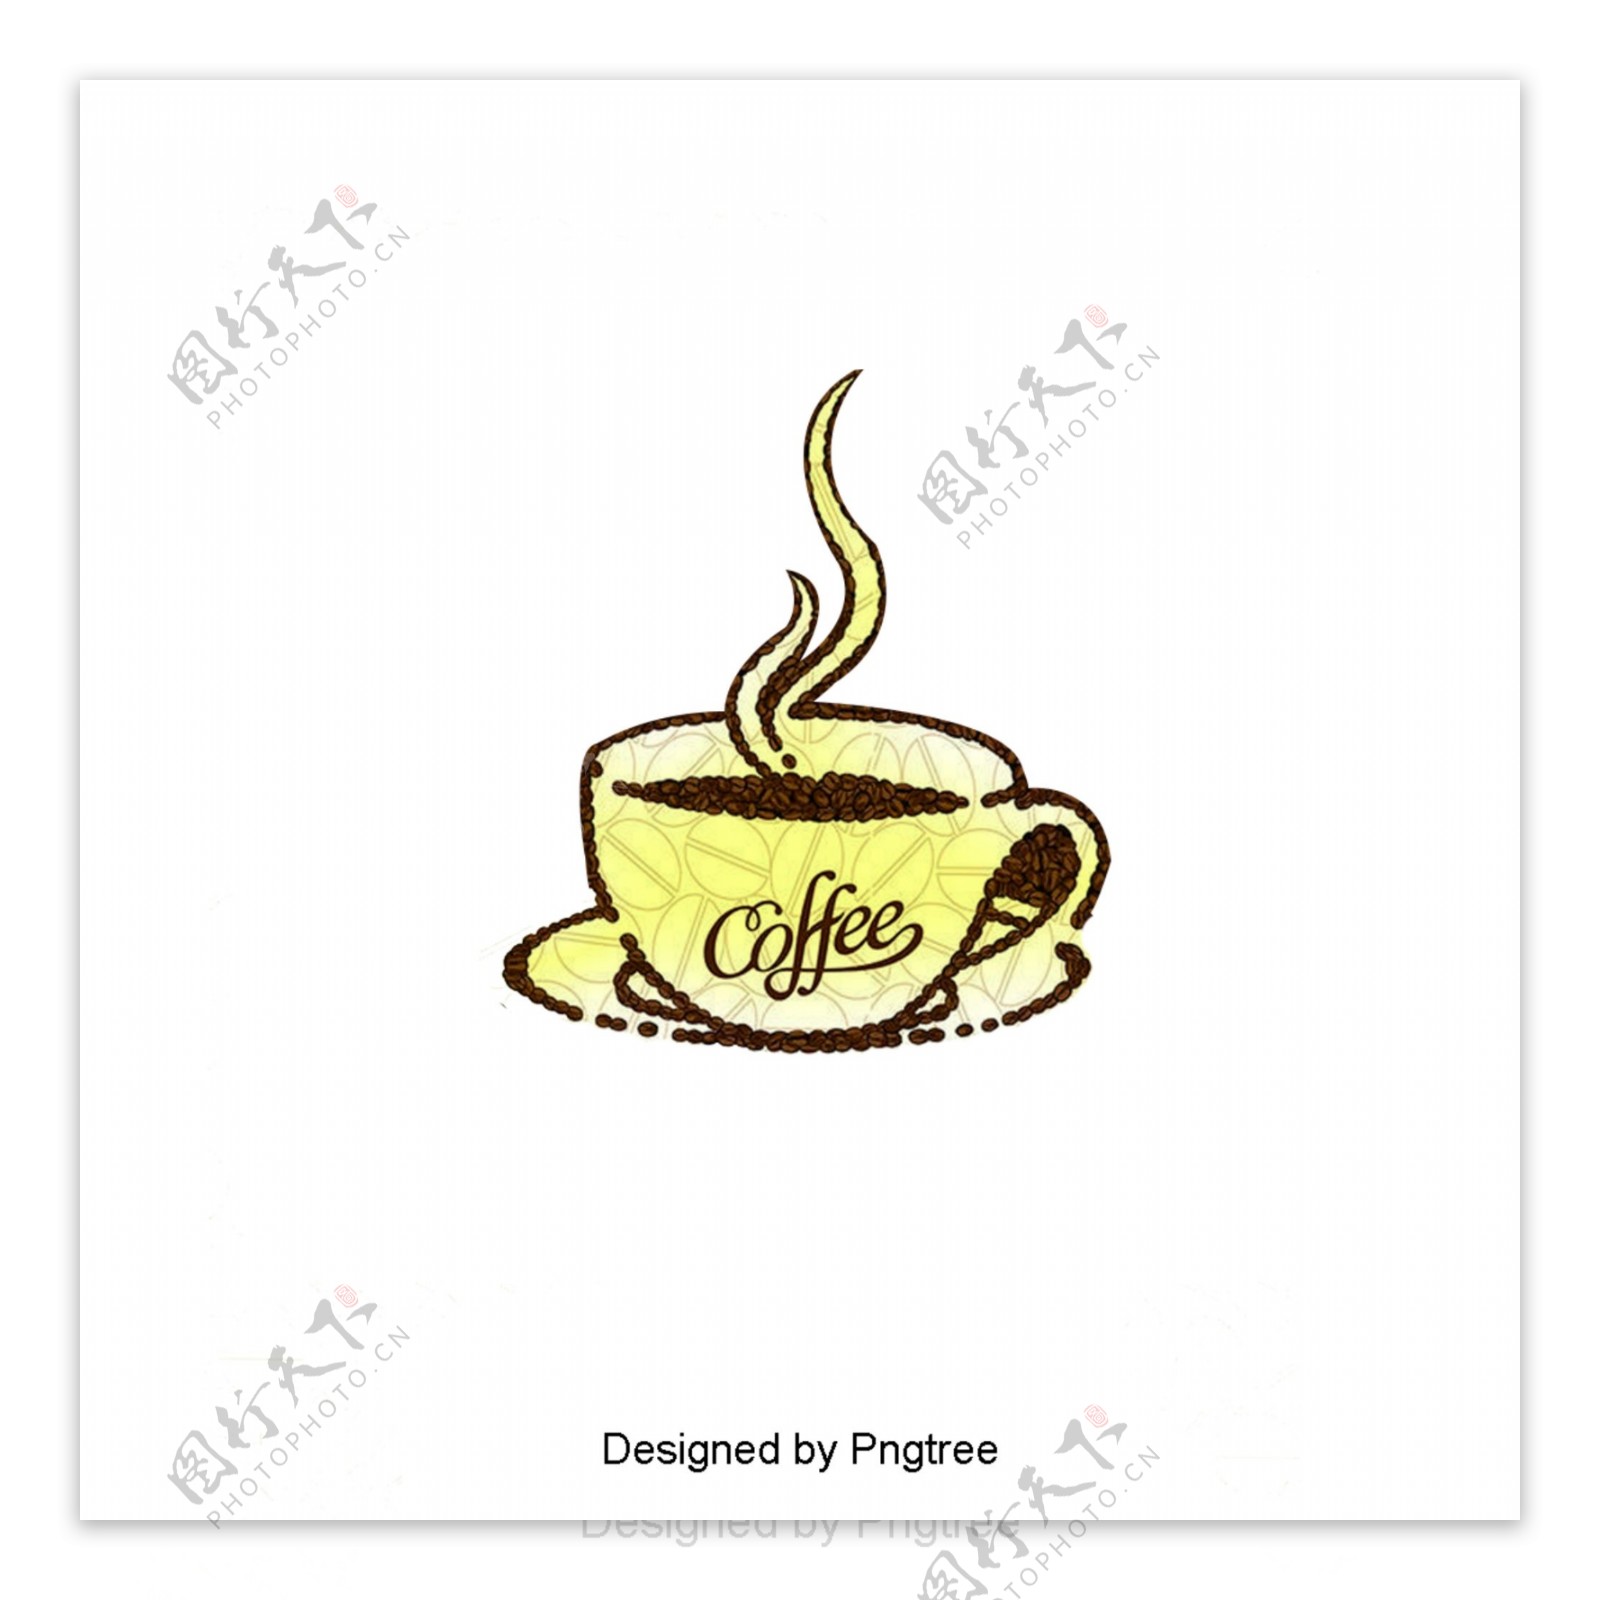 漂亮可爱的卡通手绘咖啡热饮